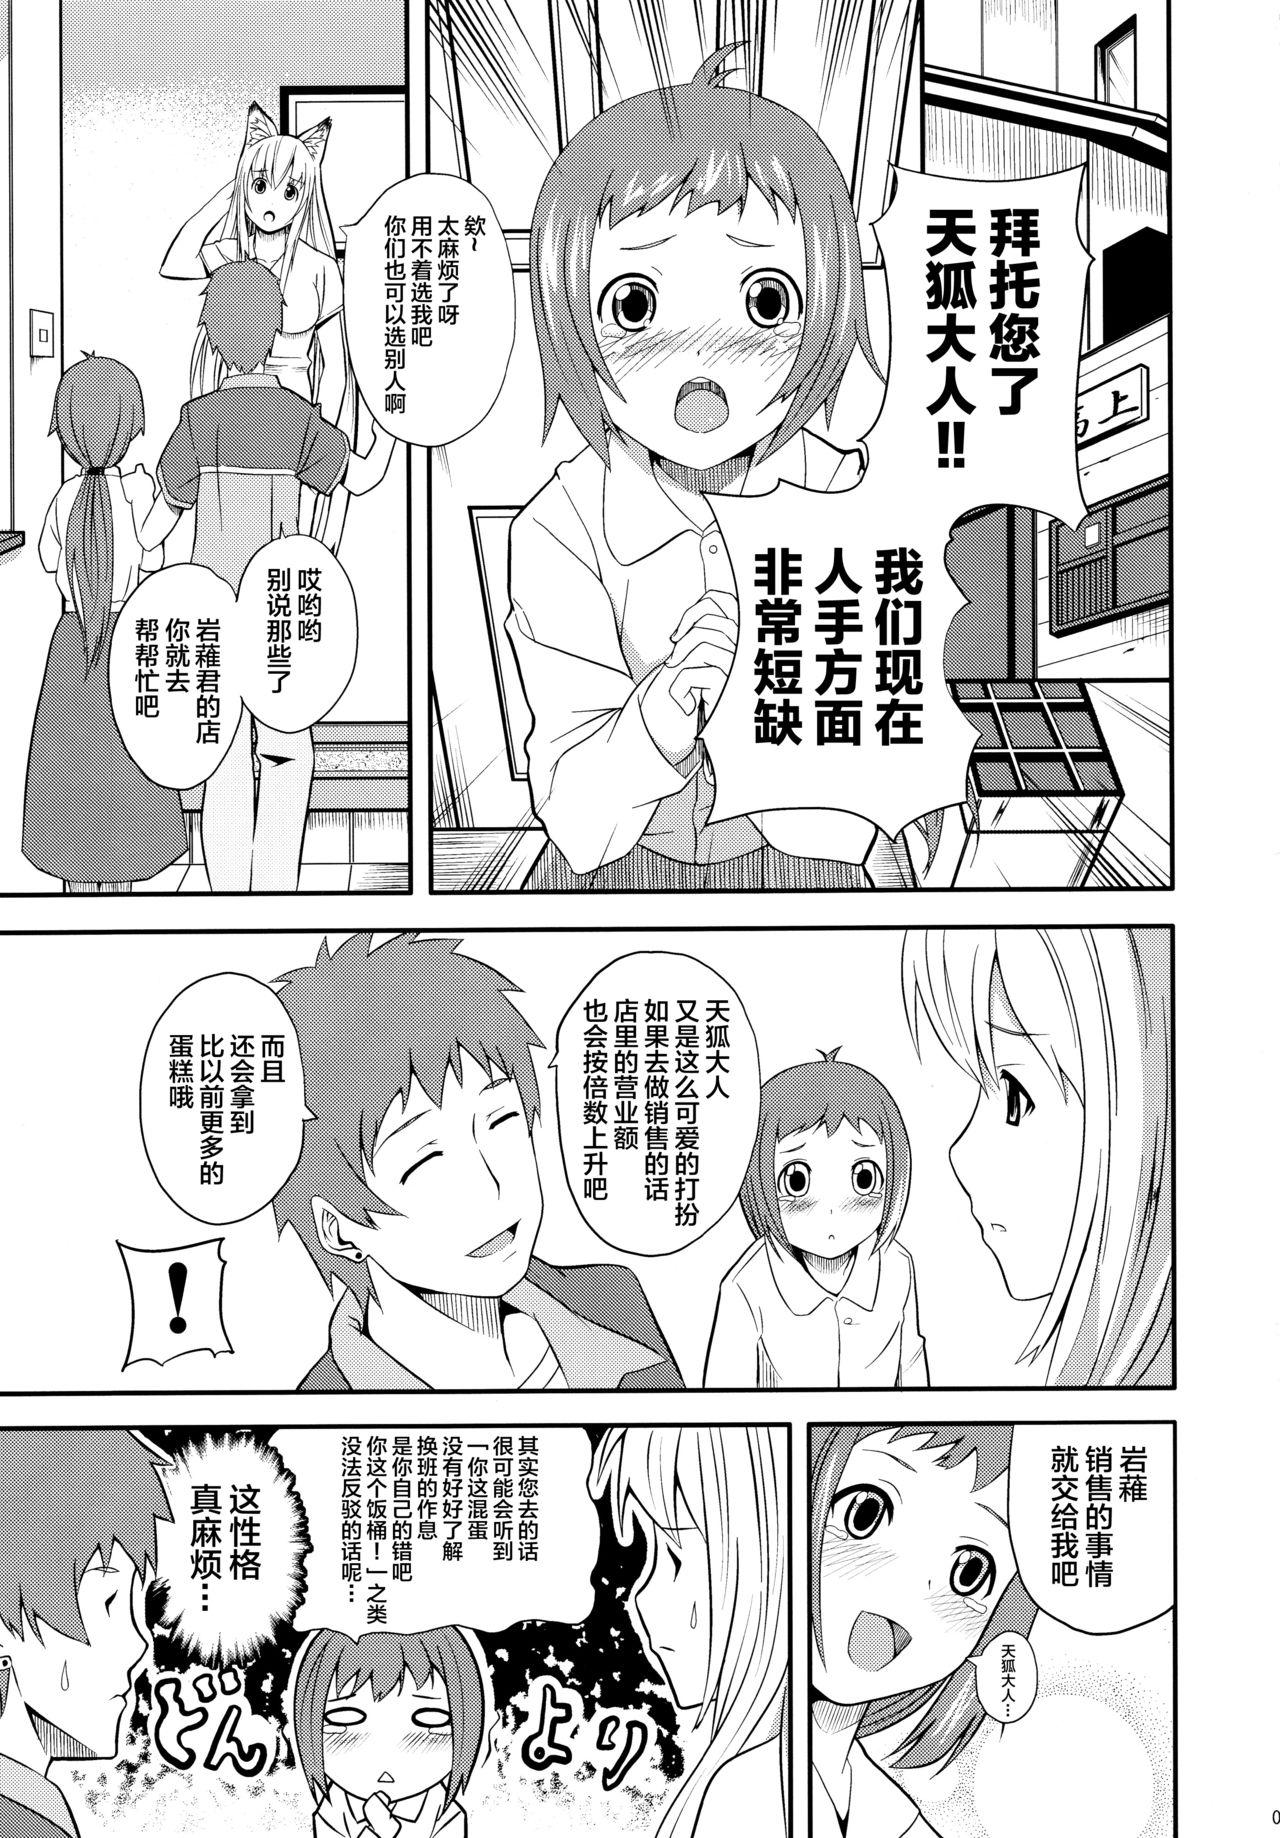 Pau Hare, Tokidoki Oinari-sama 4 - Wagaya no oinari-sama Watersports - Page 5